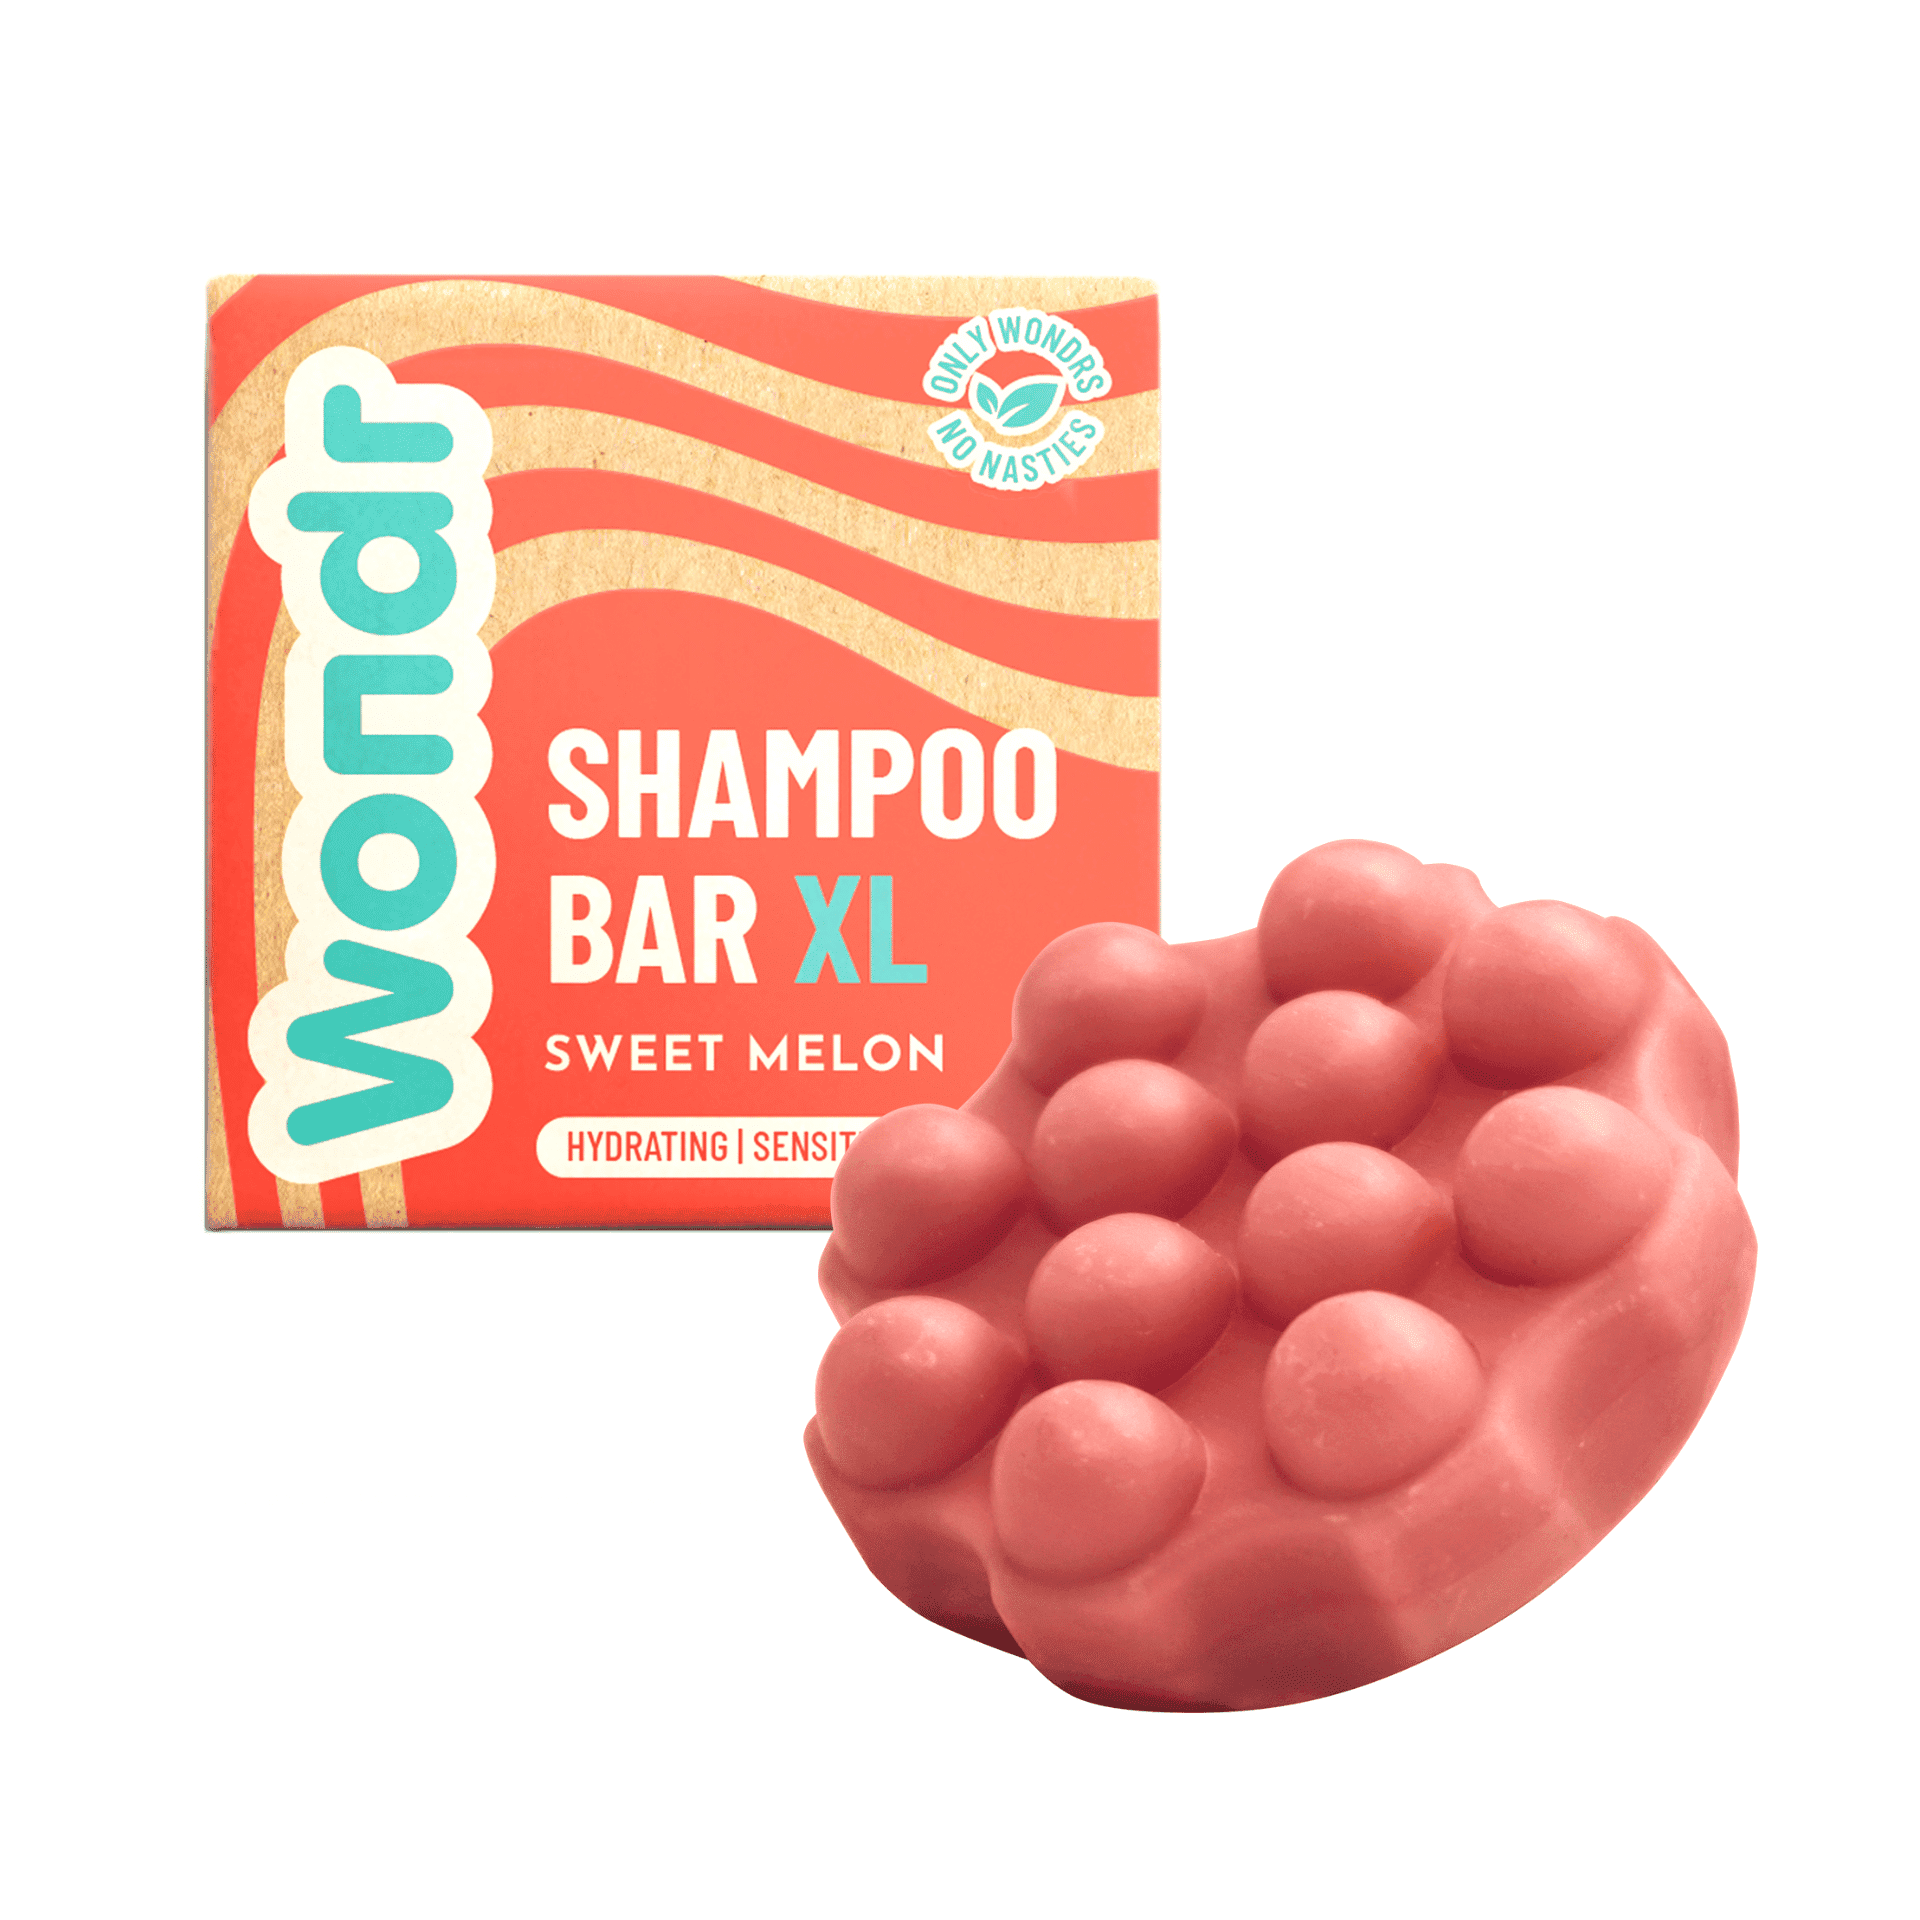 WONDR Shampoo Bar XL Sweet Melon